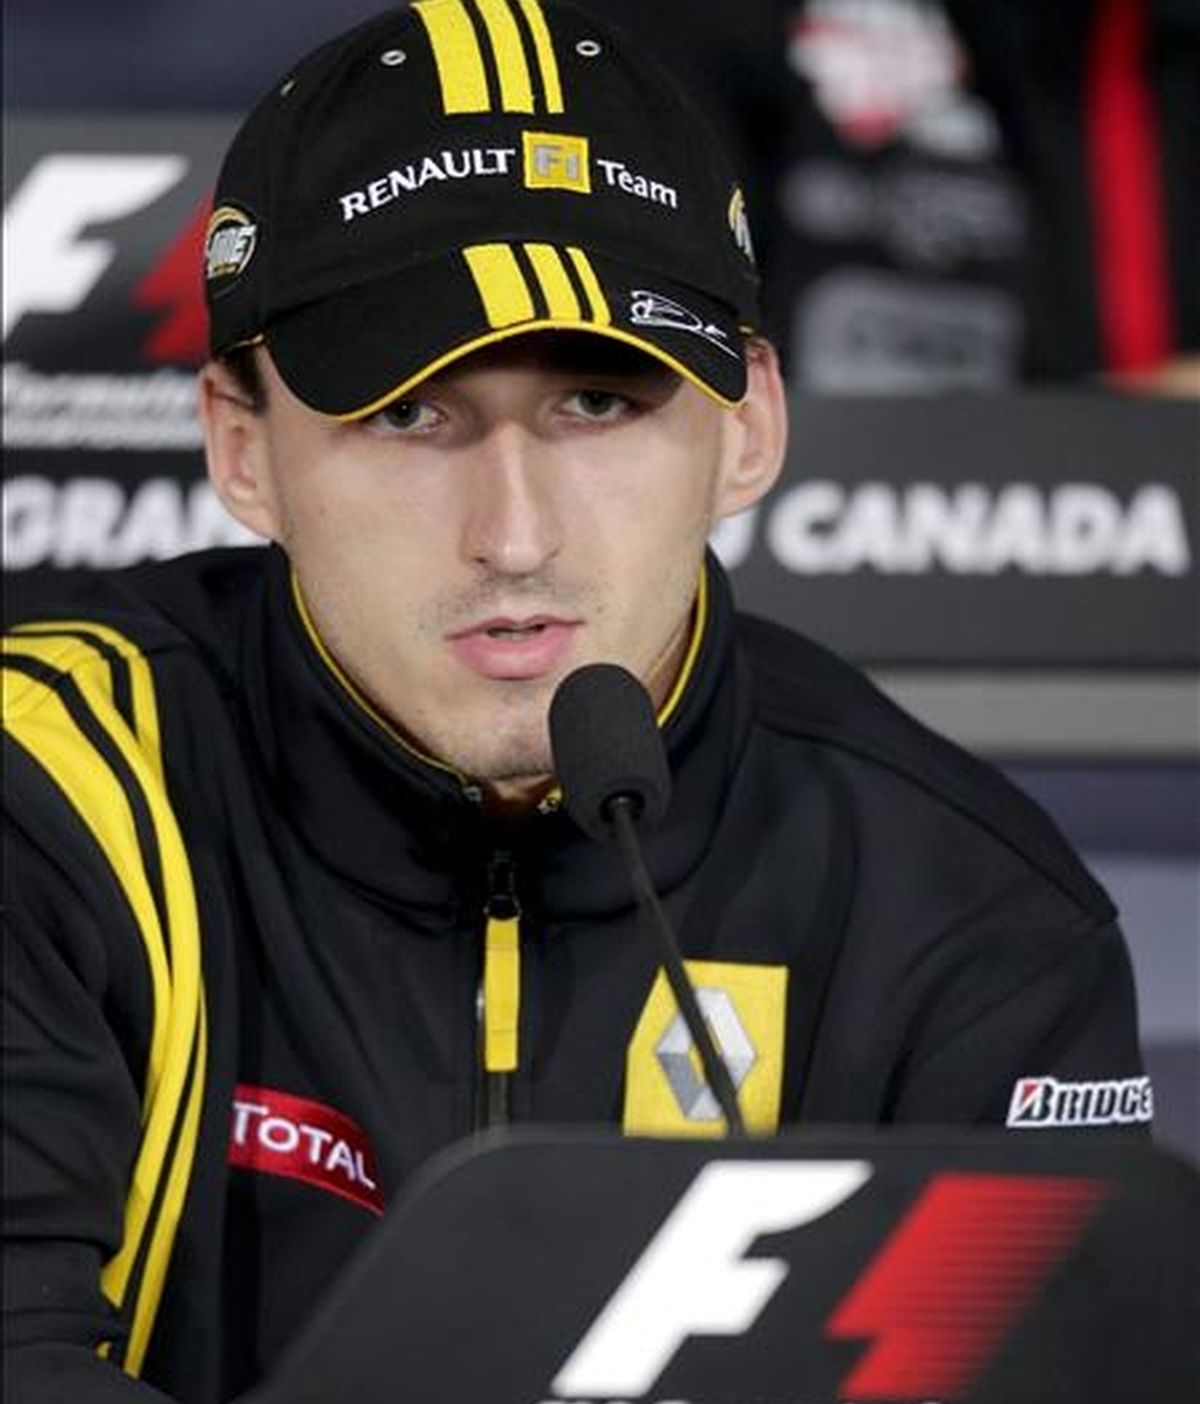 El polaco Robert Kubica (Renault) habla con periodistas durante una rueda de prensa en las instalaciones del circuito Gilles Villeneuve de Montreal, Canadá. EFE/Archivo